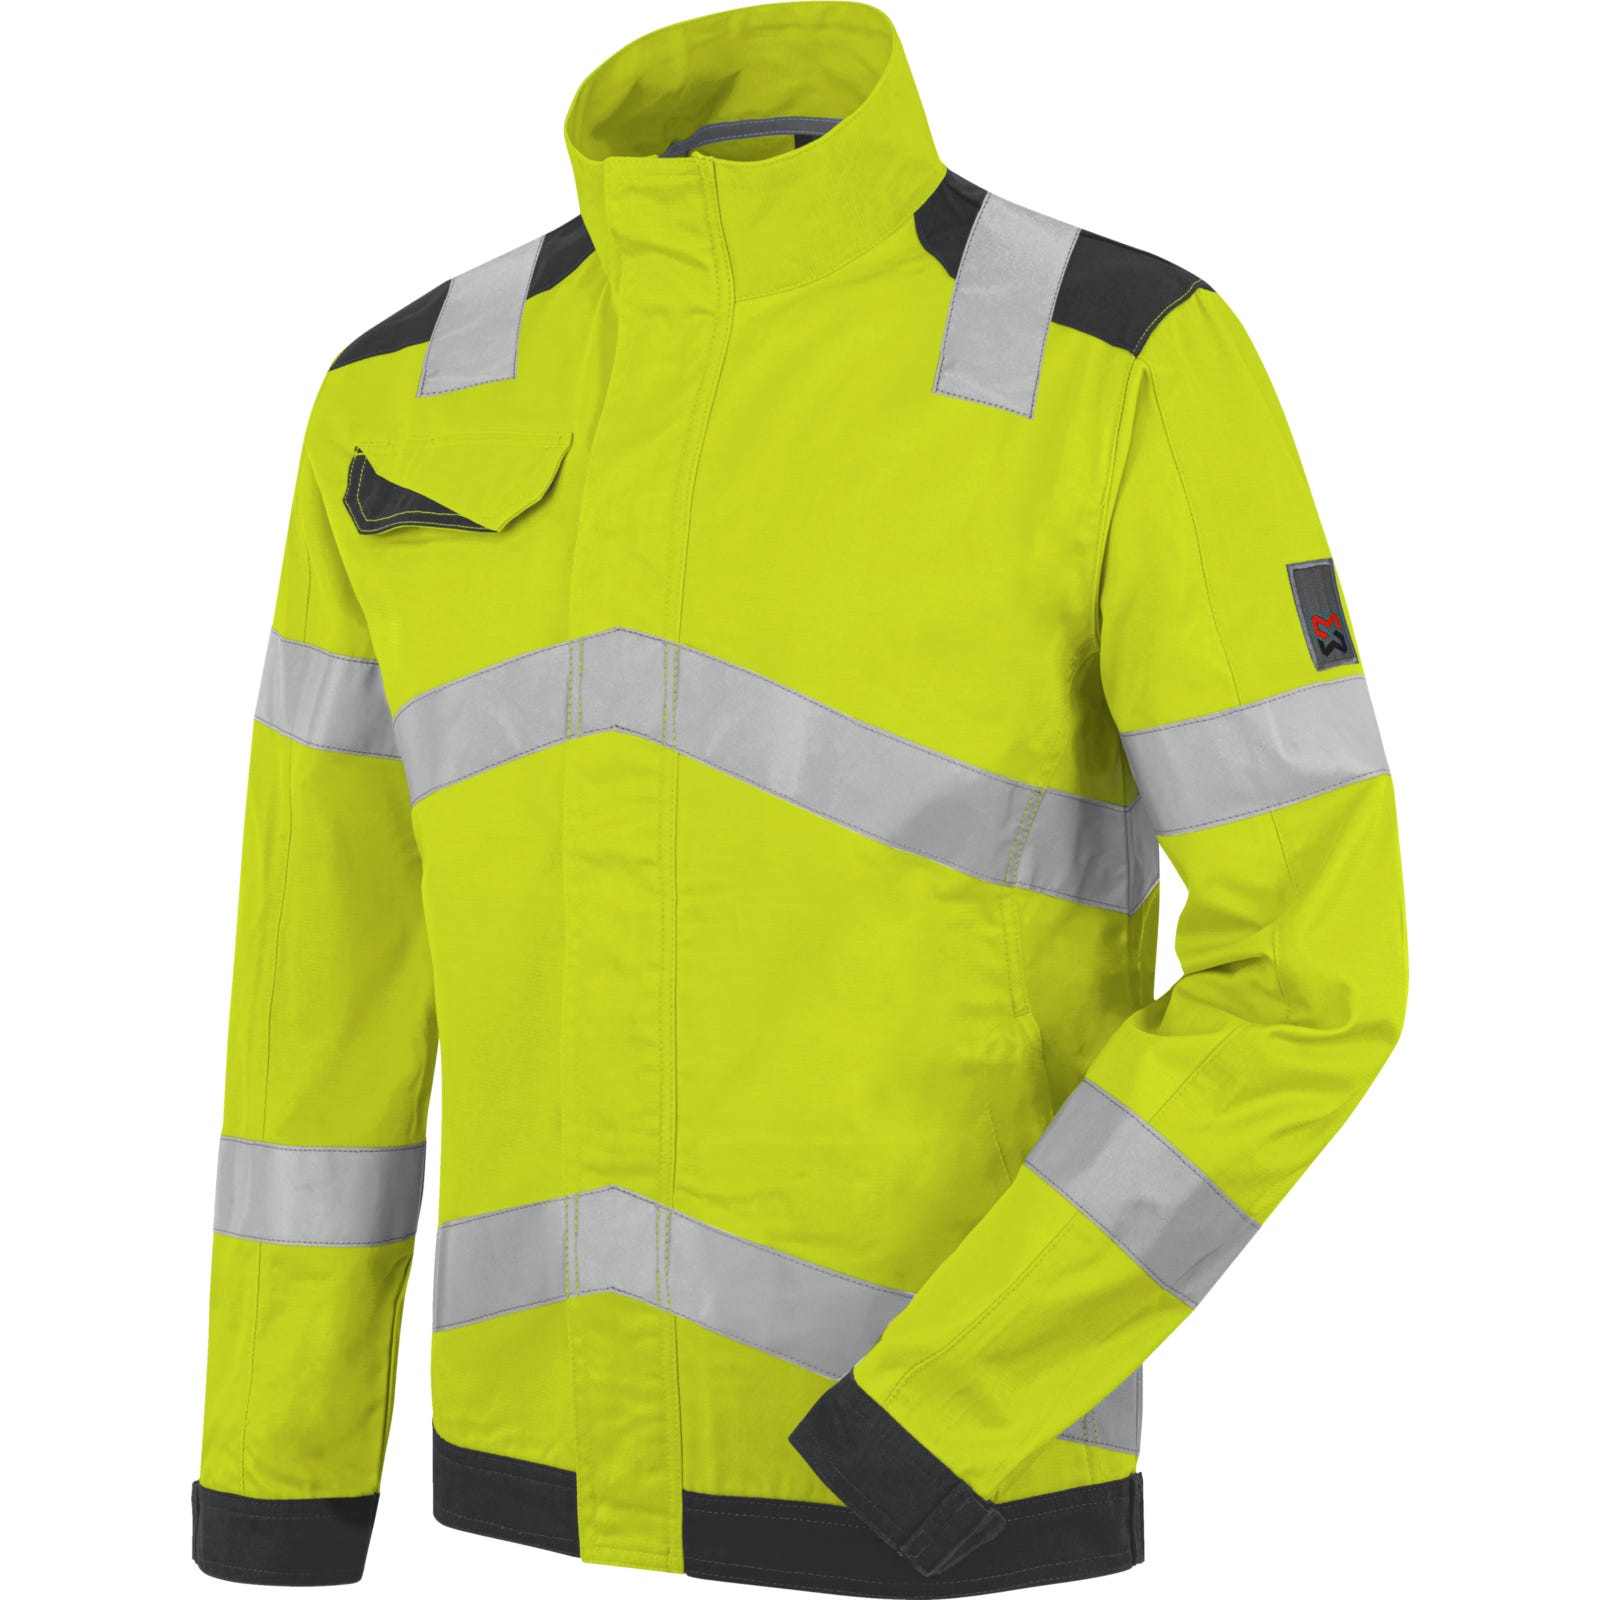 Vêtements de travail en jaune fluorescent – Produits à haute visibilité